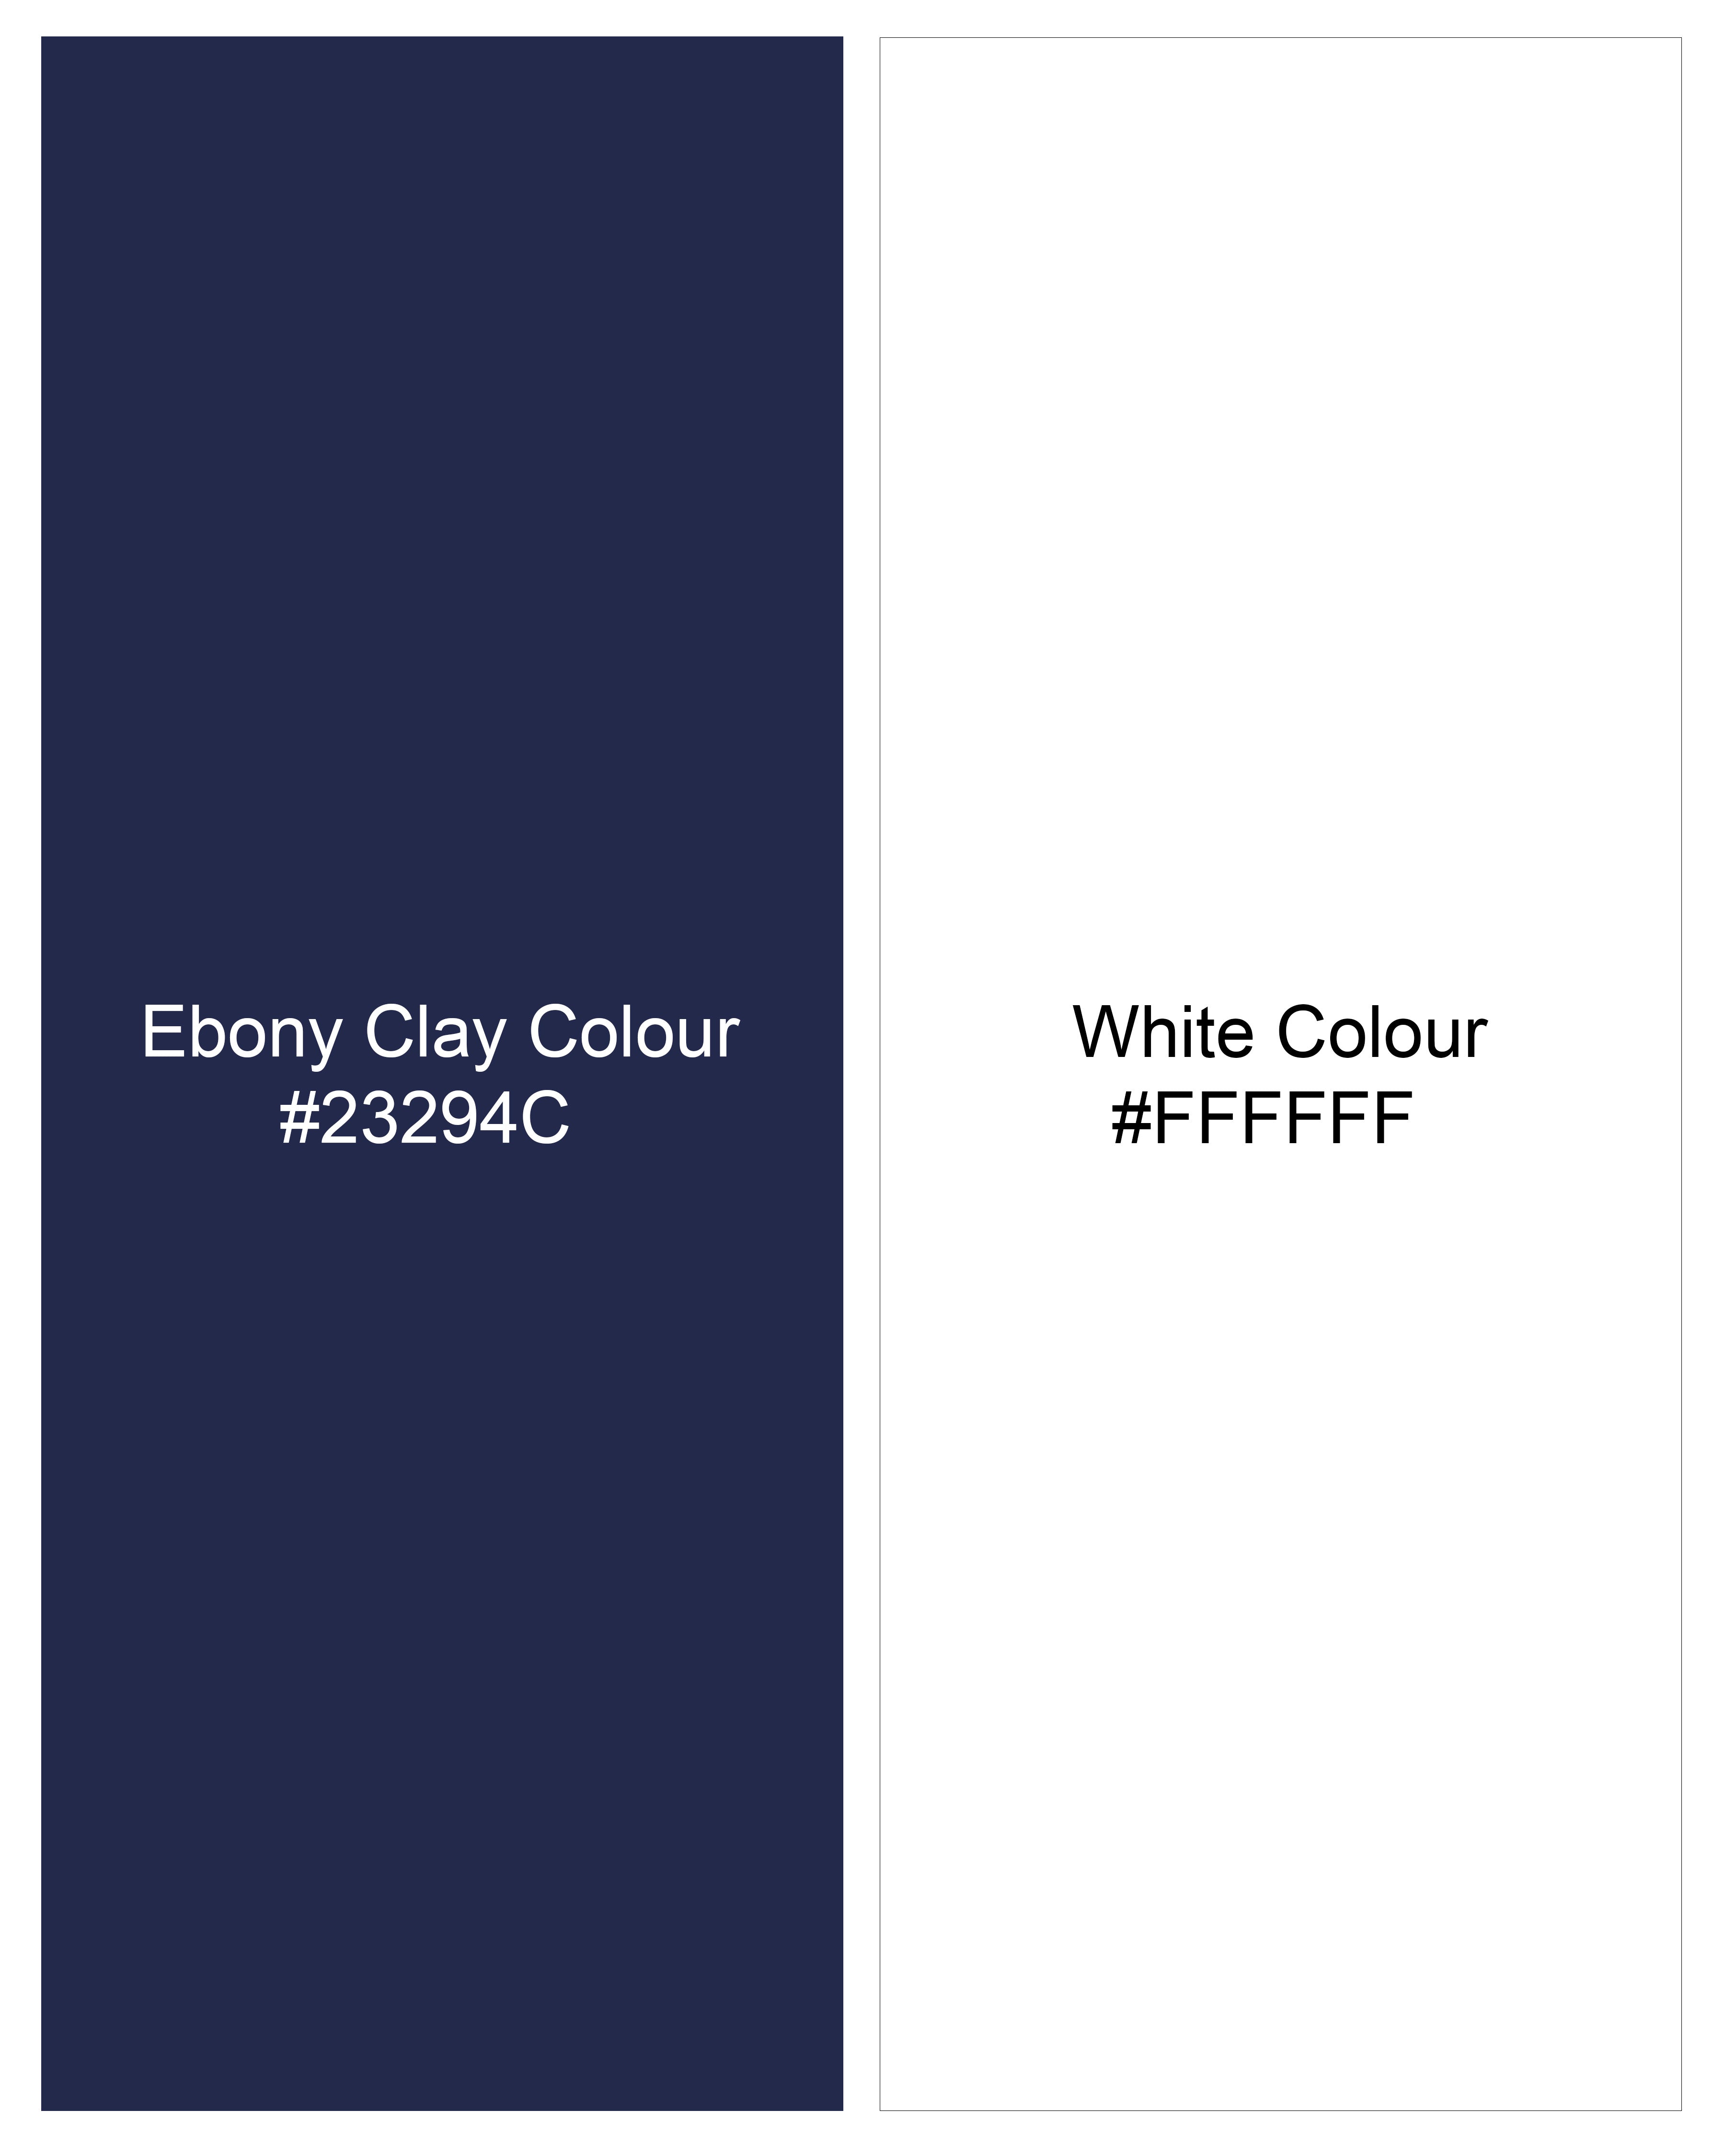 Ebony Clay Blue Textured Twill Premium Cotton Shirt 9770-38, 9770-H-38, 9770-39, 9770-H-39, 9770-40, 9770-H-40, 9770-42, 9770-H-42, 9770-44, 9770-H-44, 9770-46, 9770-H-46, 9770-48, 9770-H-48, 9770-50, 9770-H-50, 9770-52, 9770-H-52